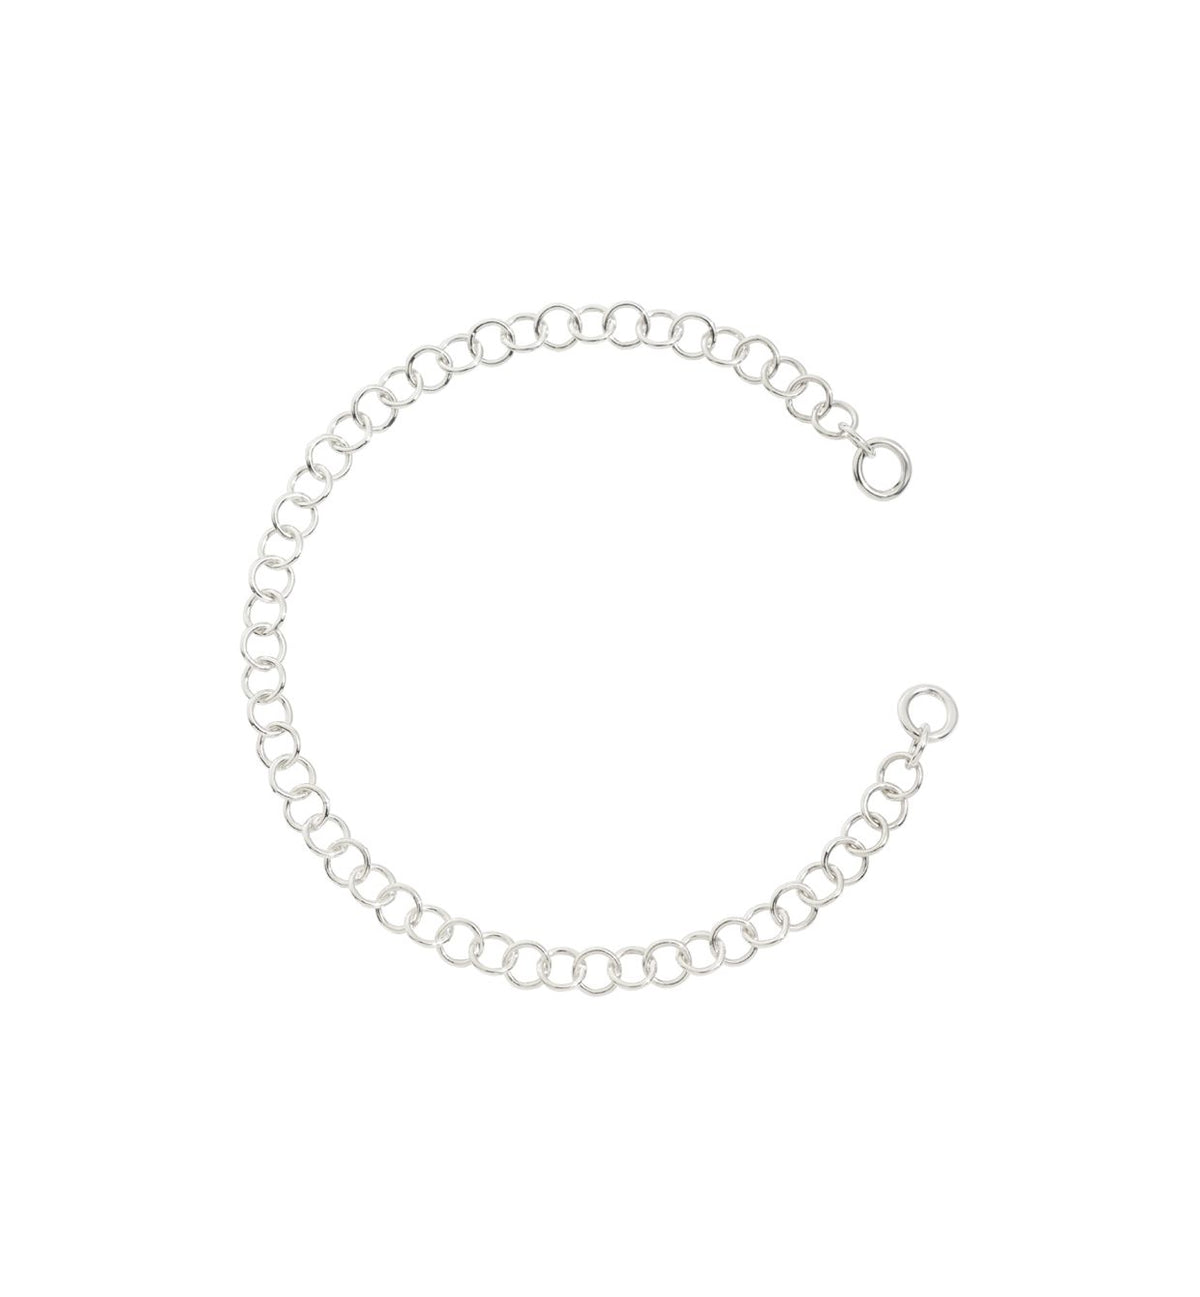 DoDo Lightweight Chain Bracelet in Silver - Orsini Jewellers NZ